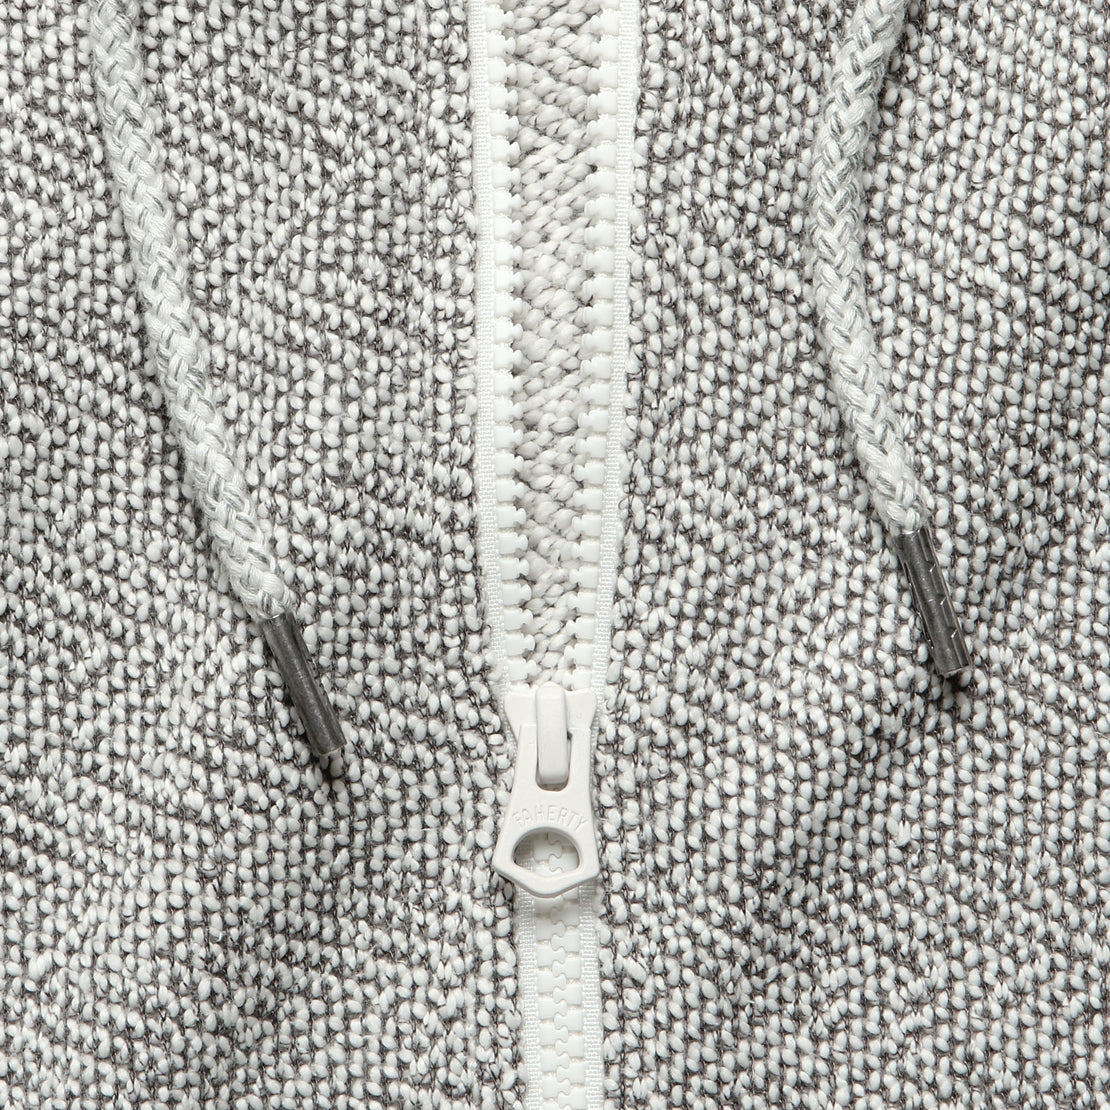 Whitewater Zip Hoodie - Grey Shell Loop - Faherty - STAG Provisions - Tops - Fleece / Sweatshirt